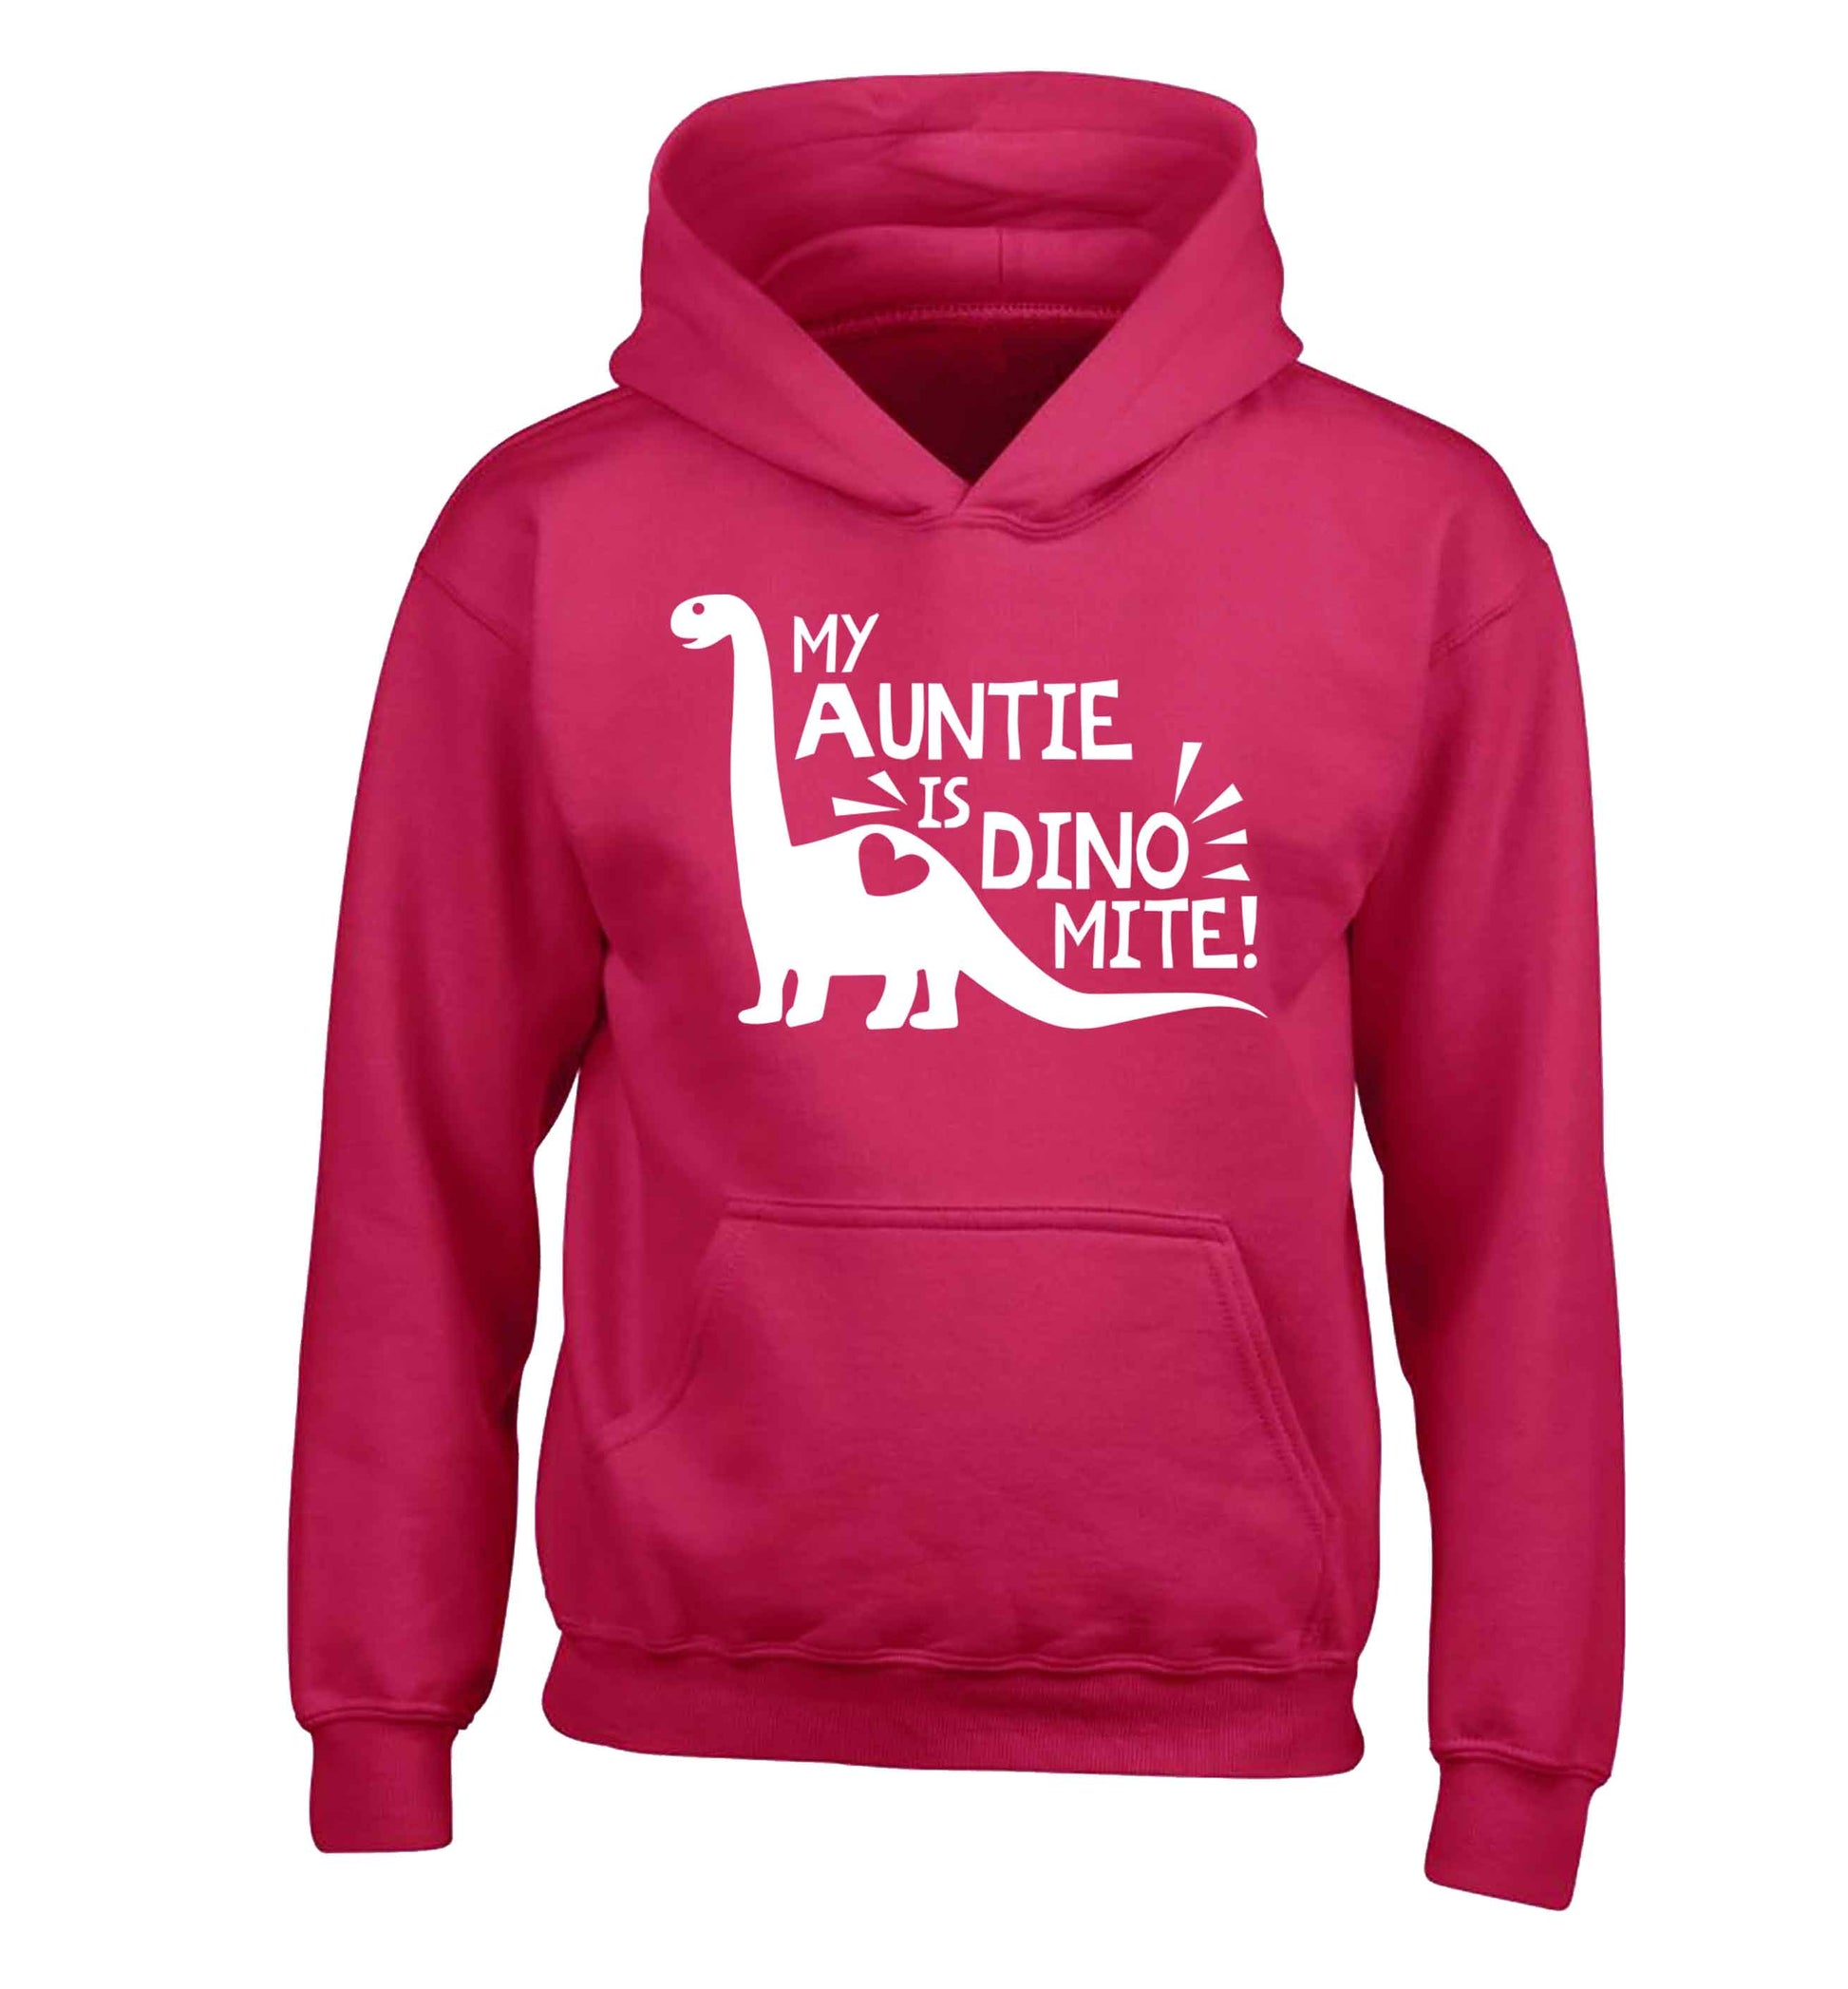 My auntie is dinomite! children's pink hoodie 12-13 Years